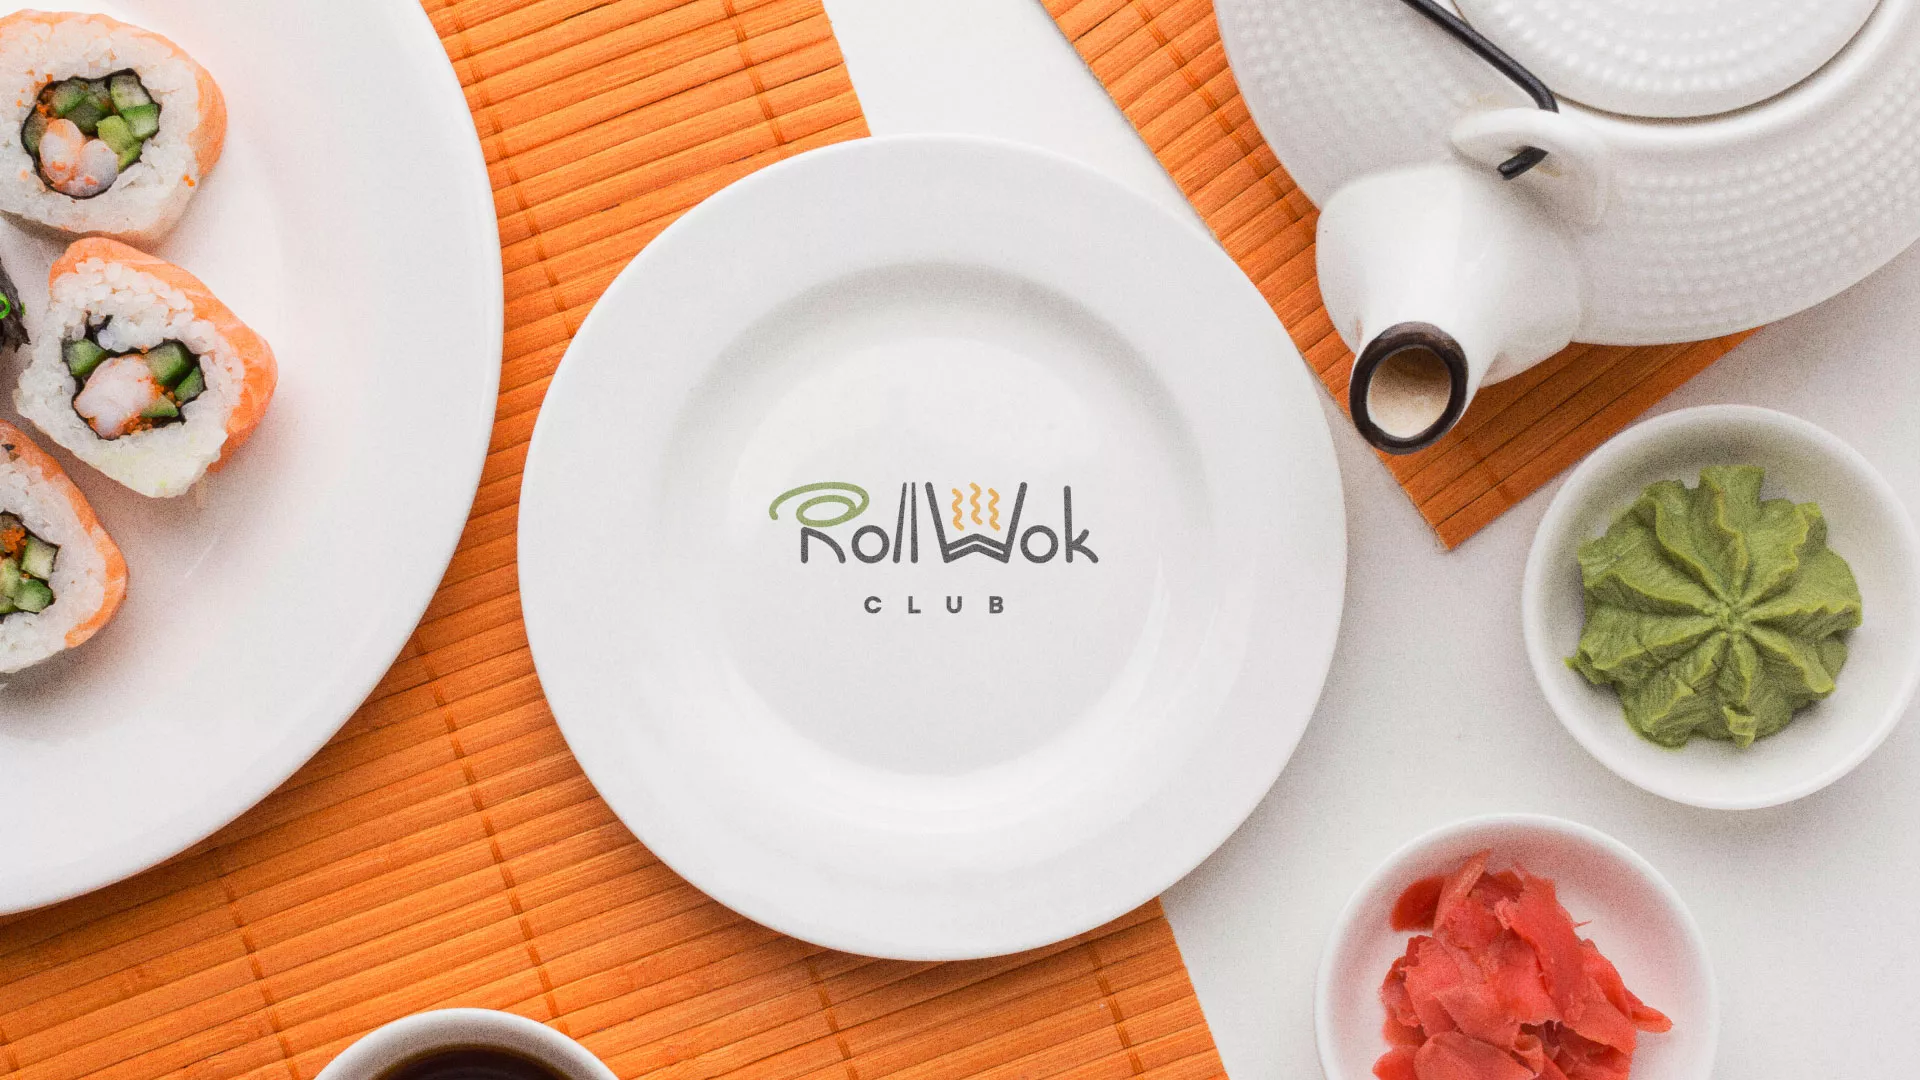 Разработка логотипа и фирменного стиля суши-бара «Roll Wok Club» в Палласовке